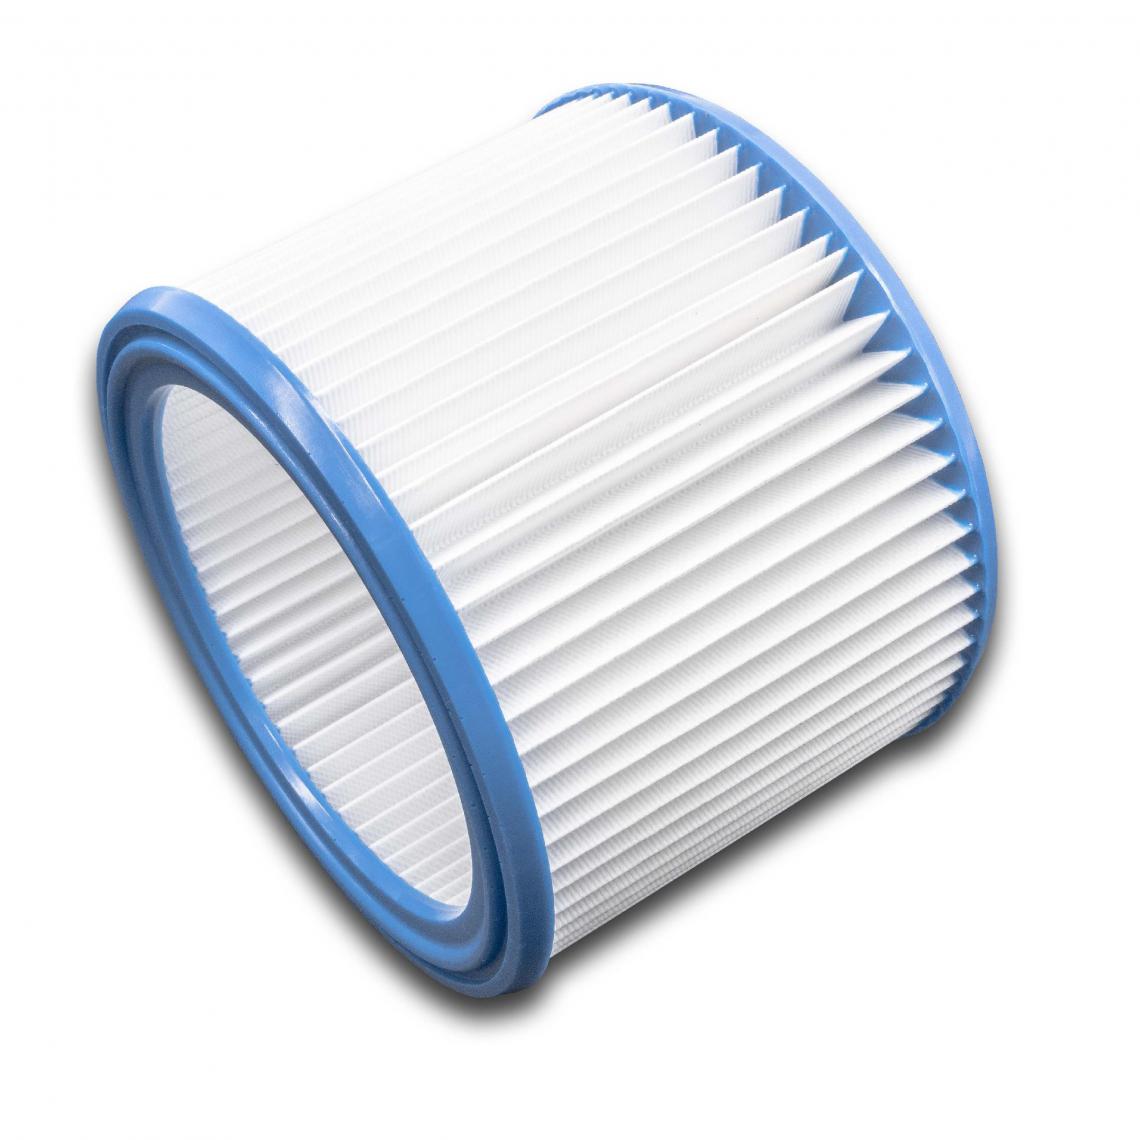 Vhbw - vhbw Set de filtres 10x Filtre plissé compatible avec Nilfisk / Alto / Wap Attix 751-2M, 791, 791-21 aspirateur à sec ou humide - Filtre à cartouche - Accessoire entretien des sols